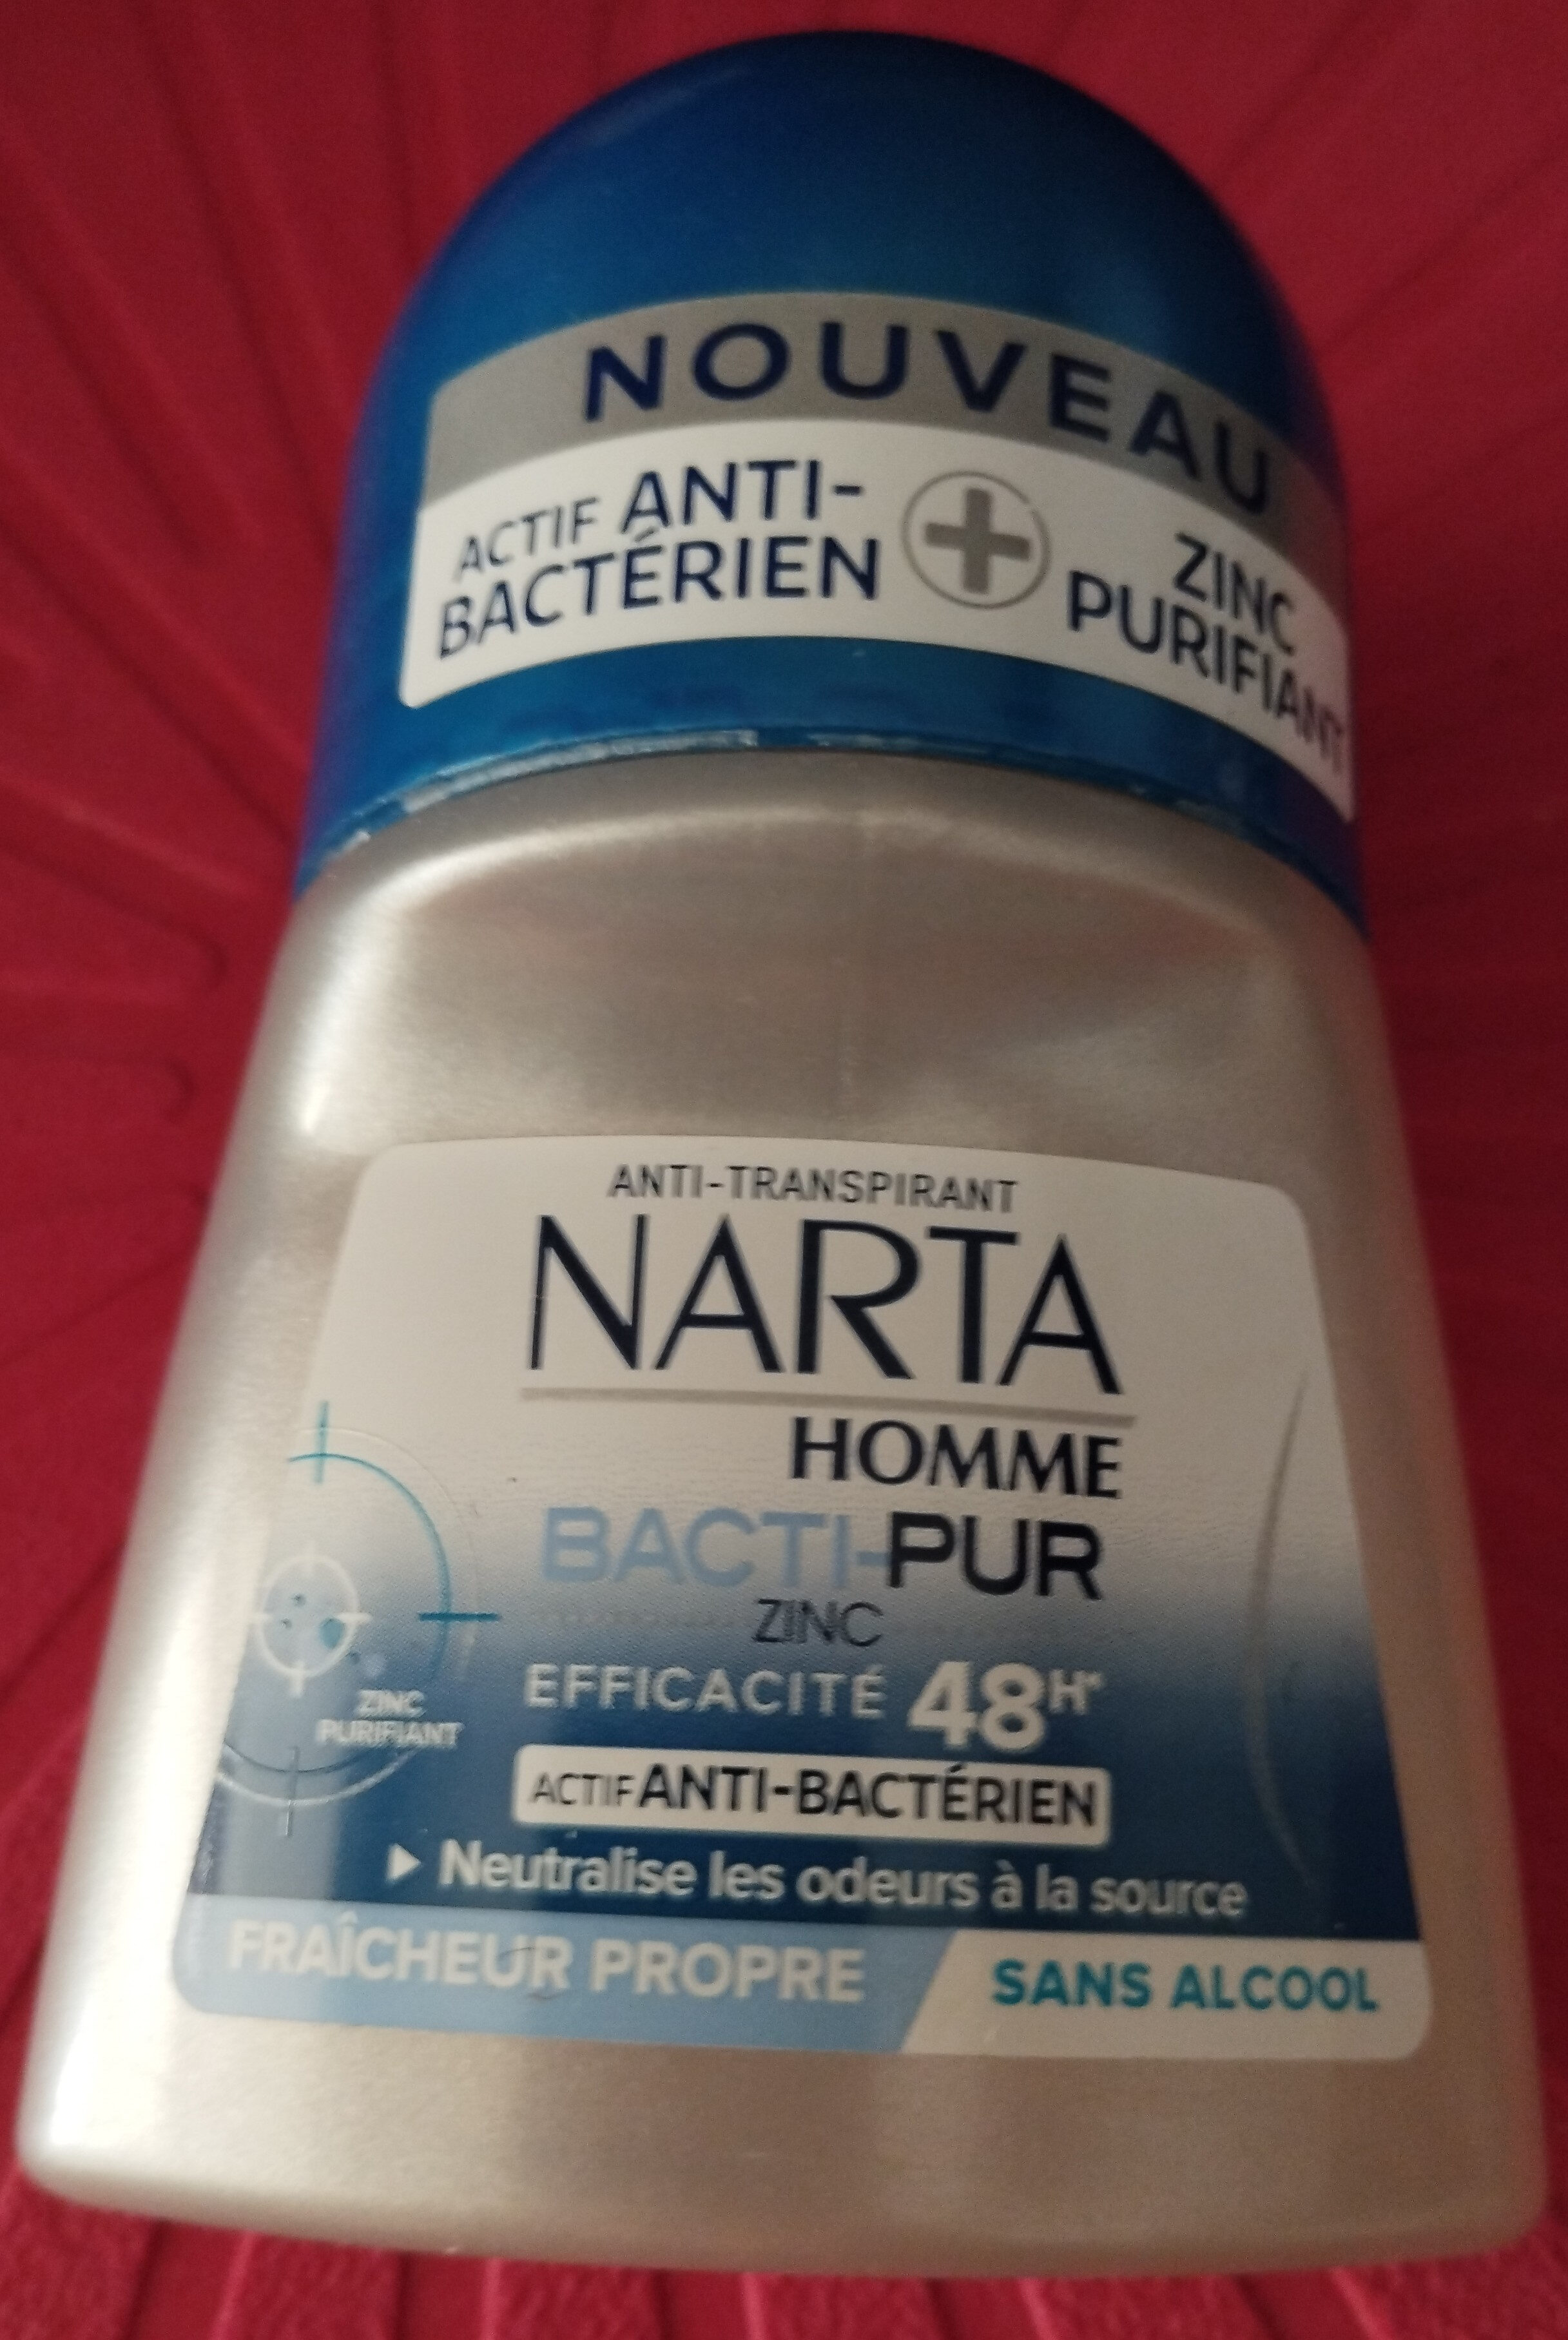 Narta homme Bacti pur 48h - Produkt - fr